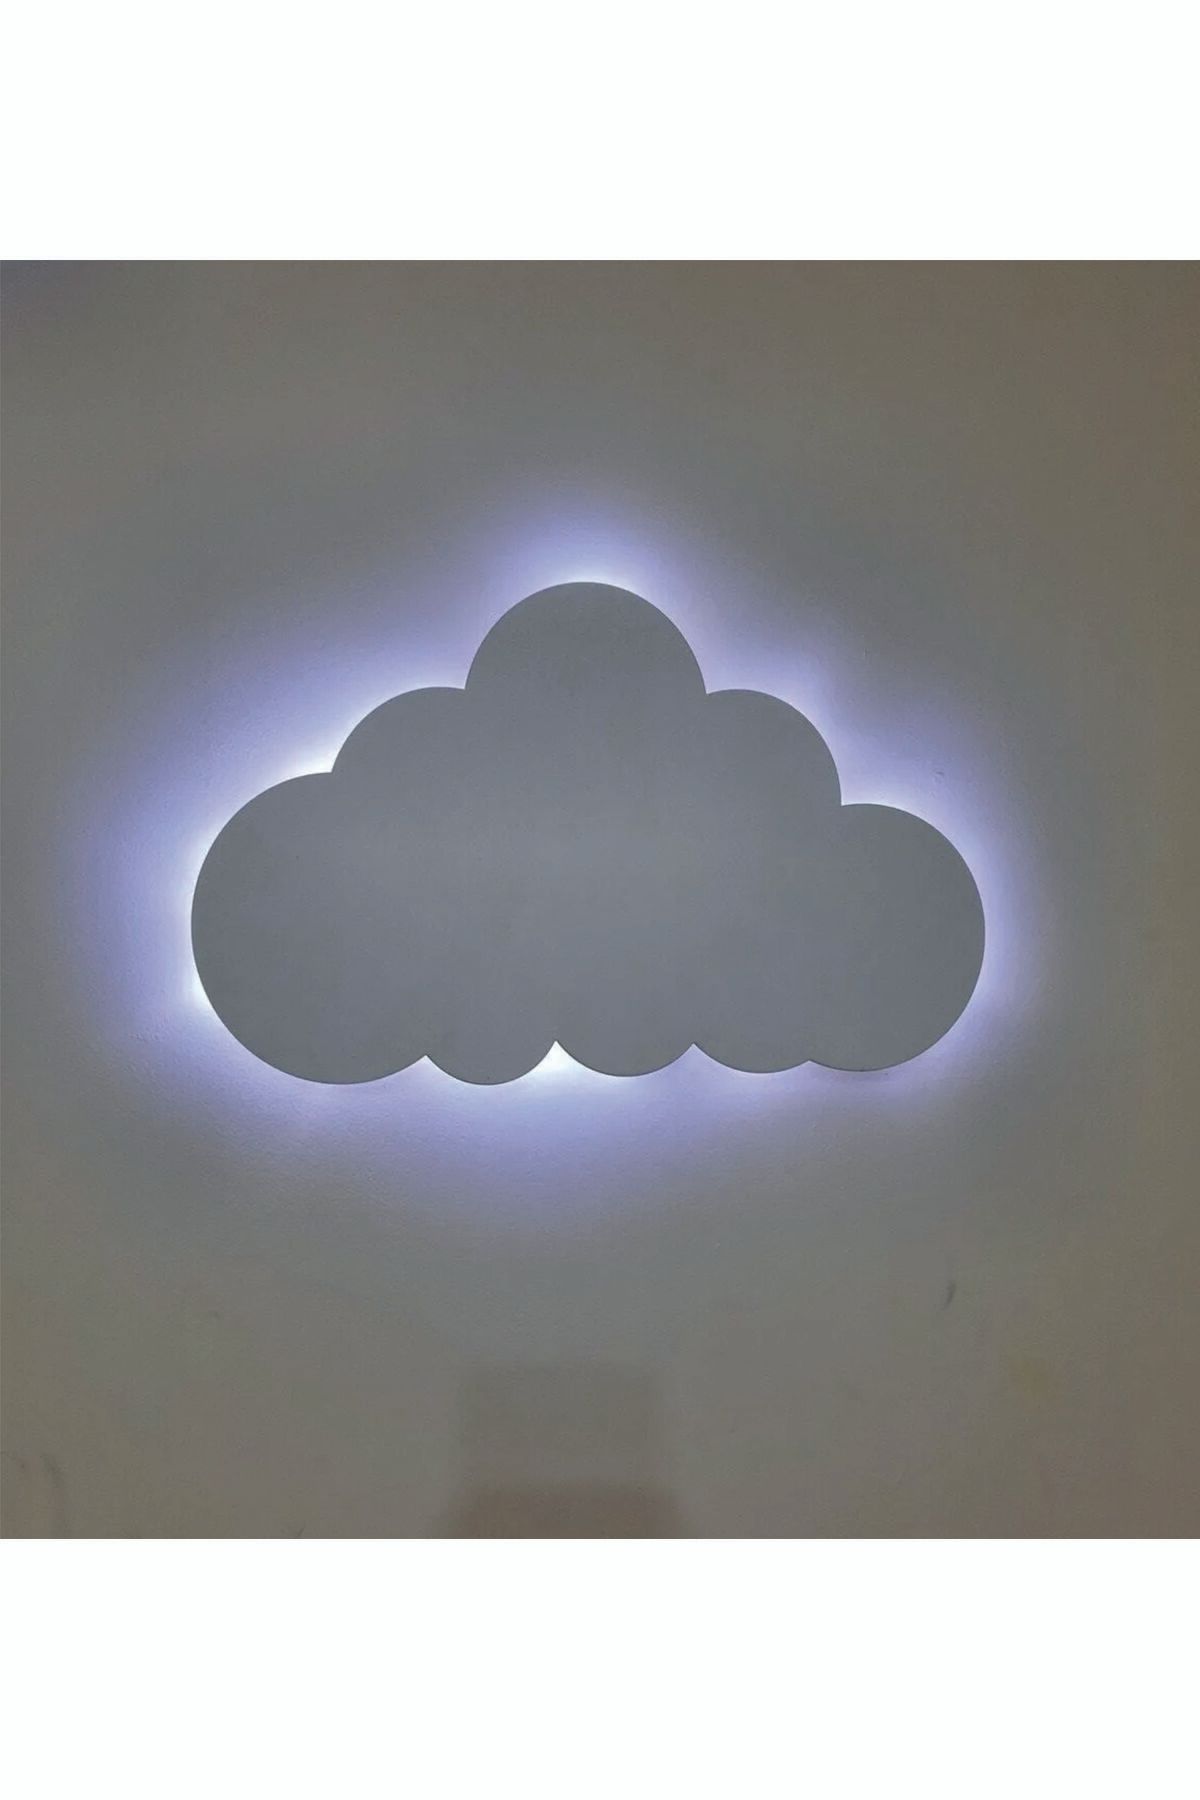 İLK HEDİYEM Çocuk Odası Peri Ledli, Işıklı Beyaz Bulut Gece Lambası 40 x 25 cm